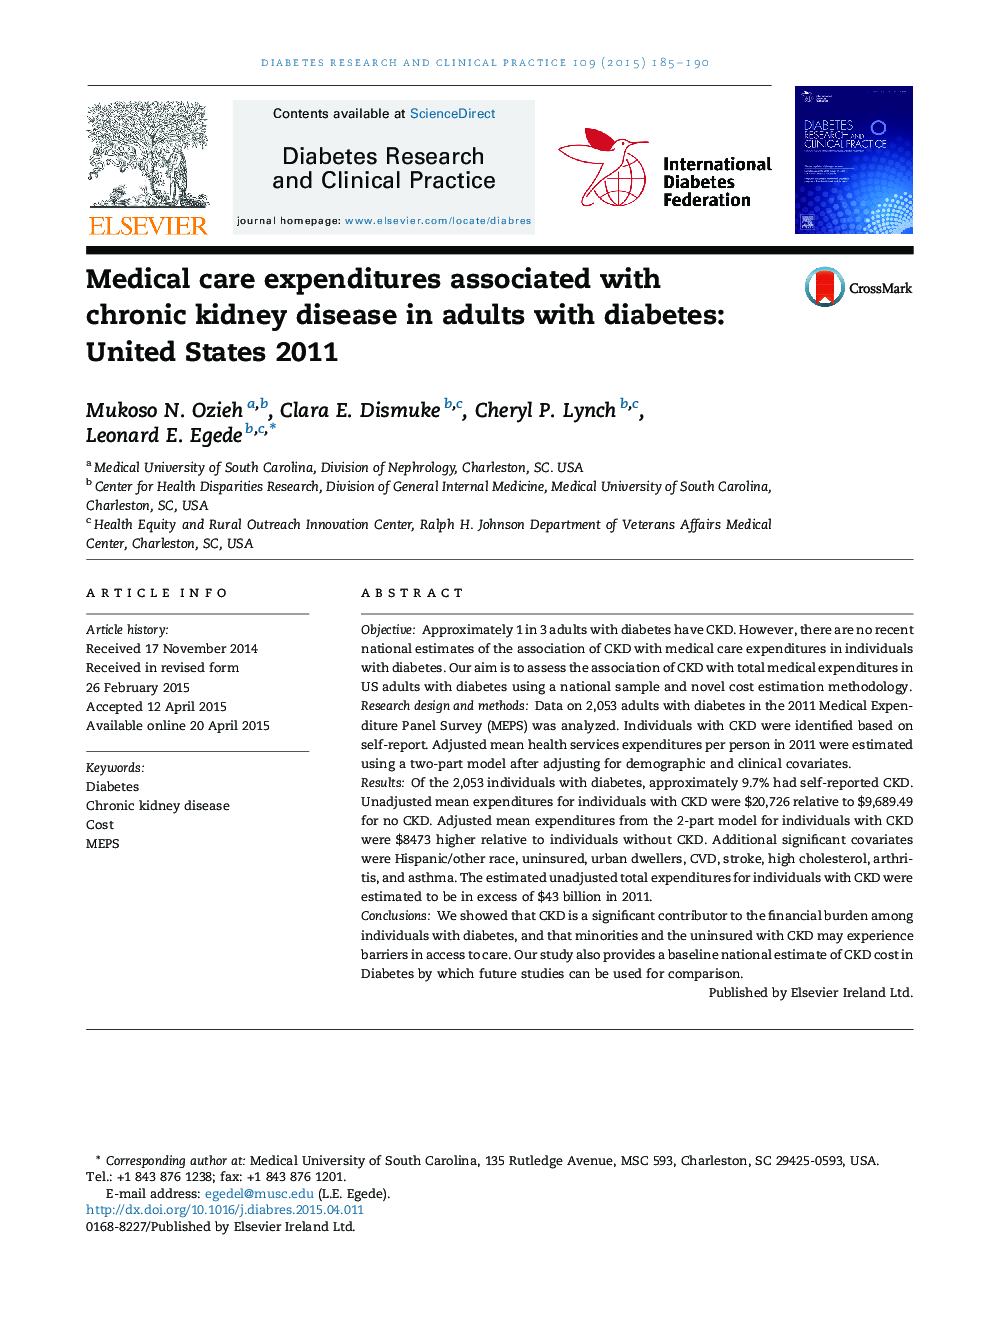 هزینه های مراقبت های پزشکی مرتبط با بیماری مزمن کلیه در بزرگسالان مبتلا به دیابت: ایالات متحده 2011 